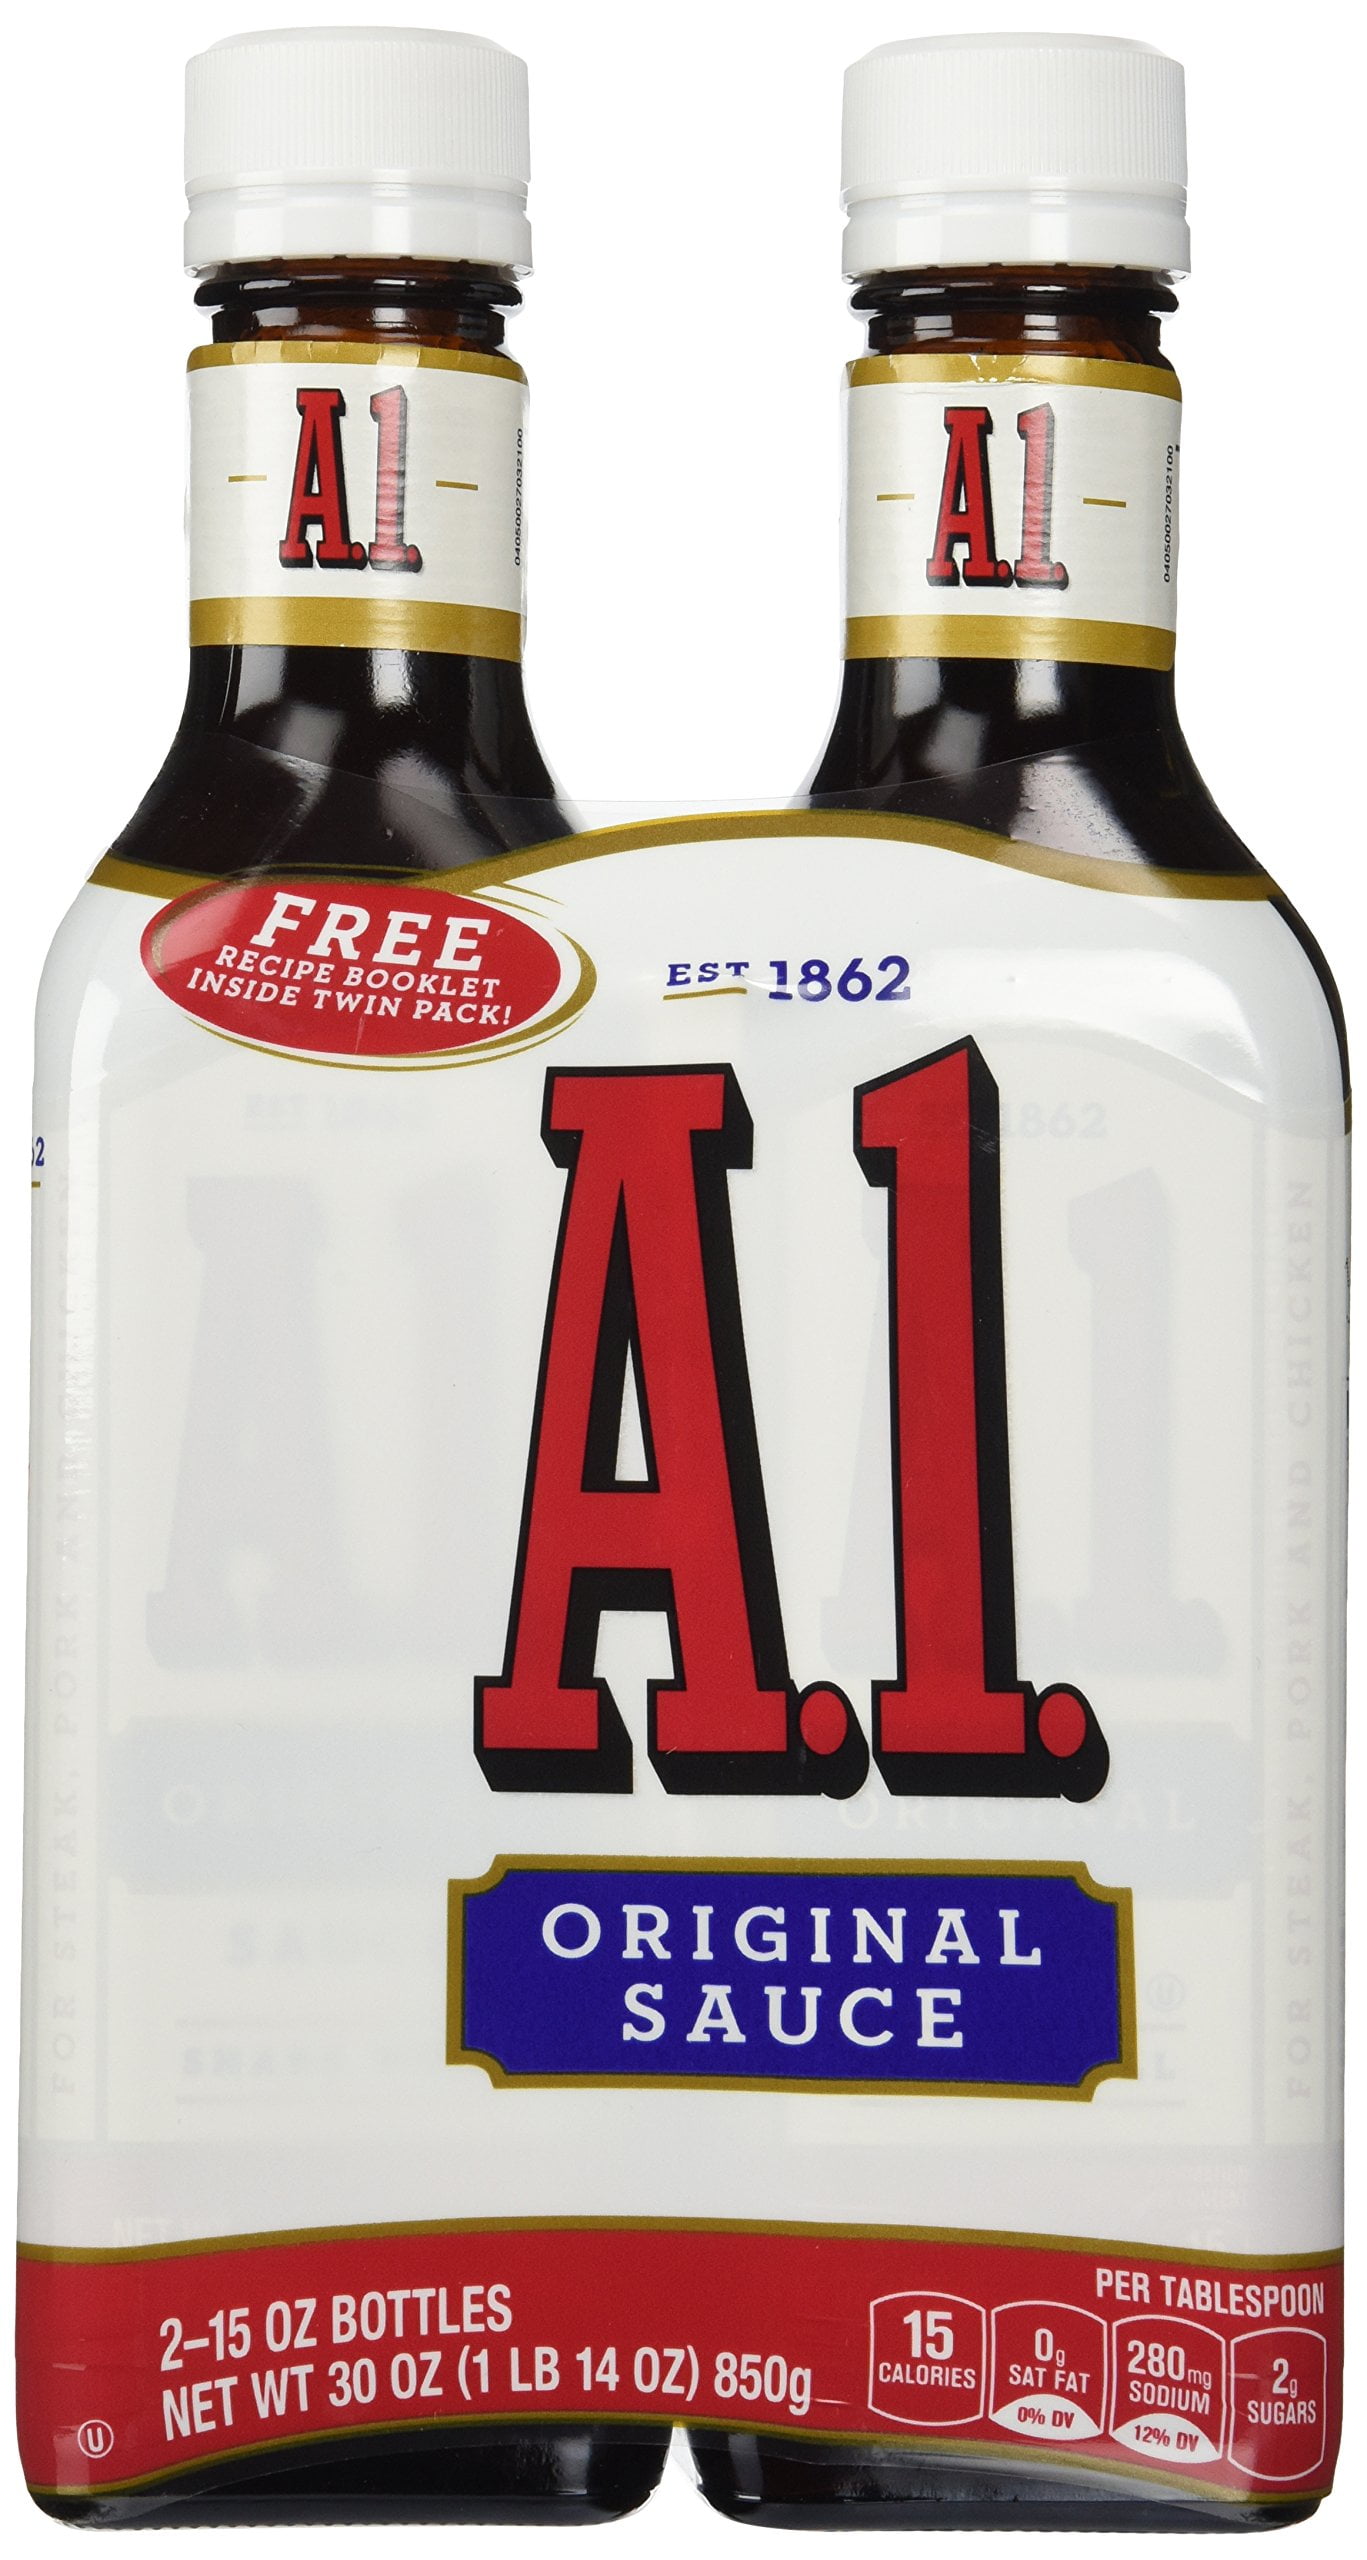 A1® Steak Sauce (packet)